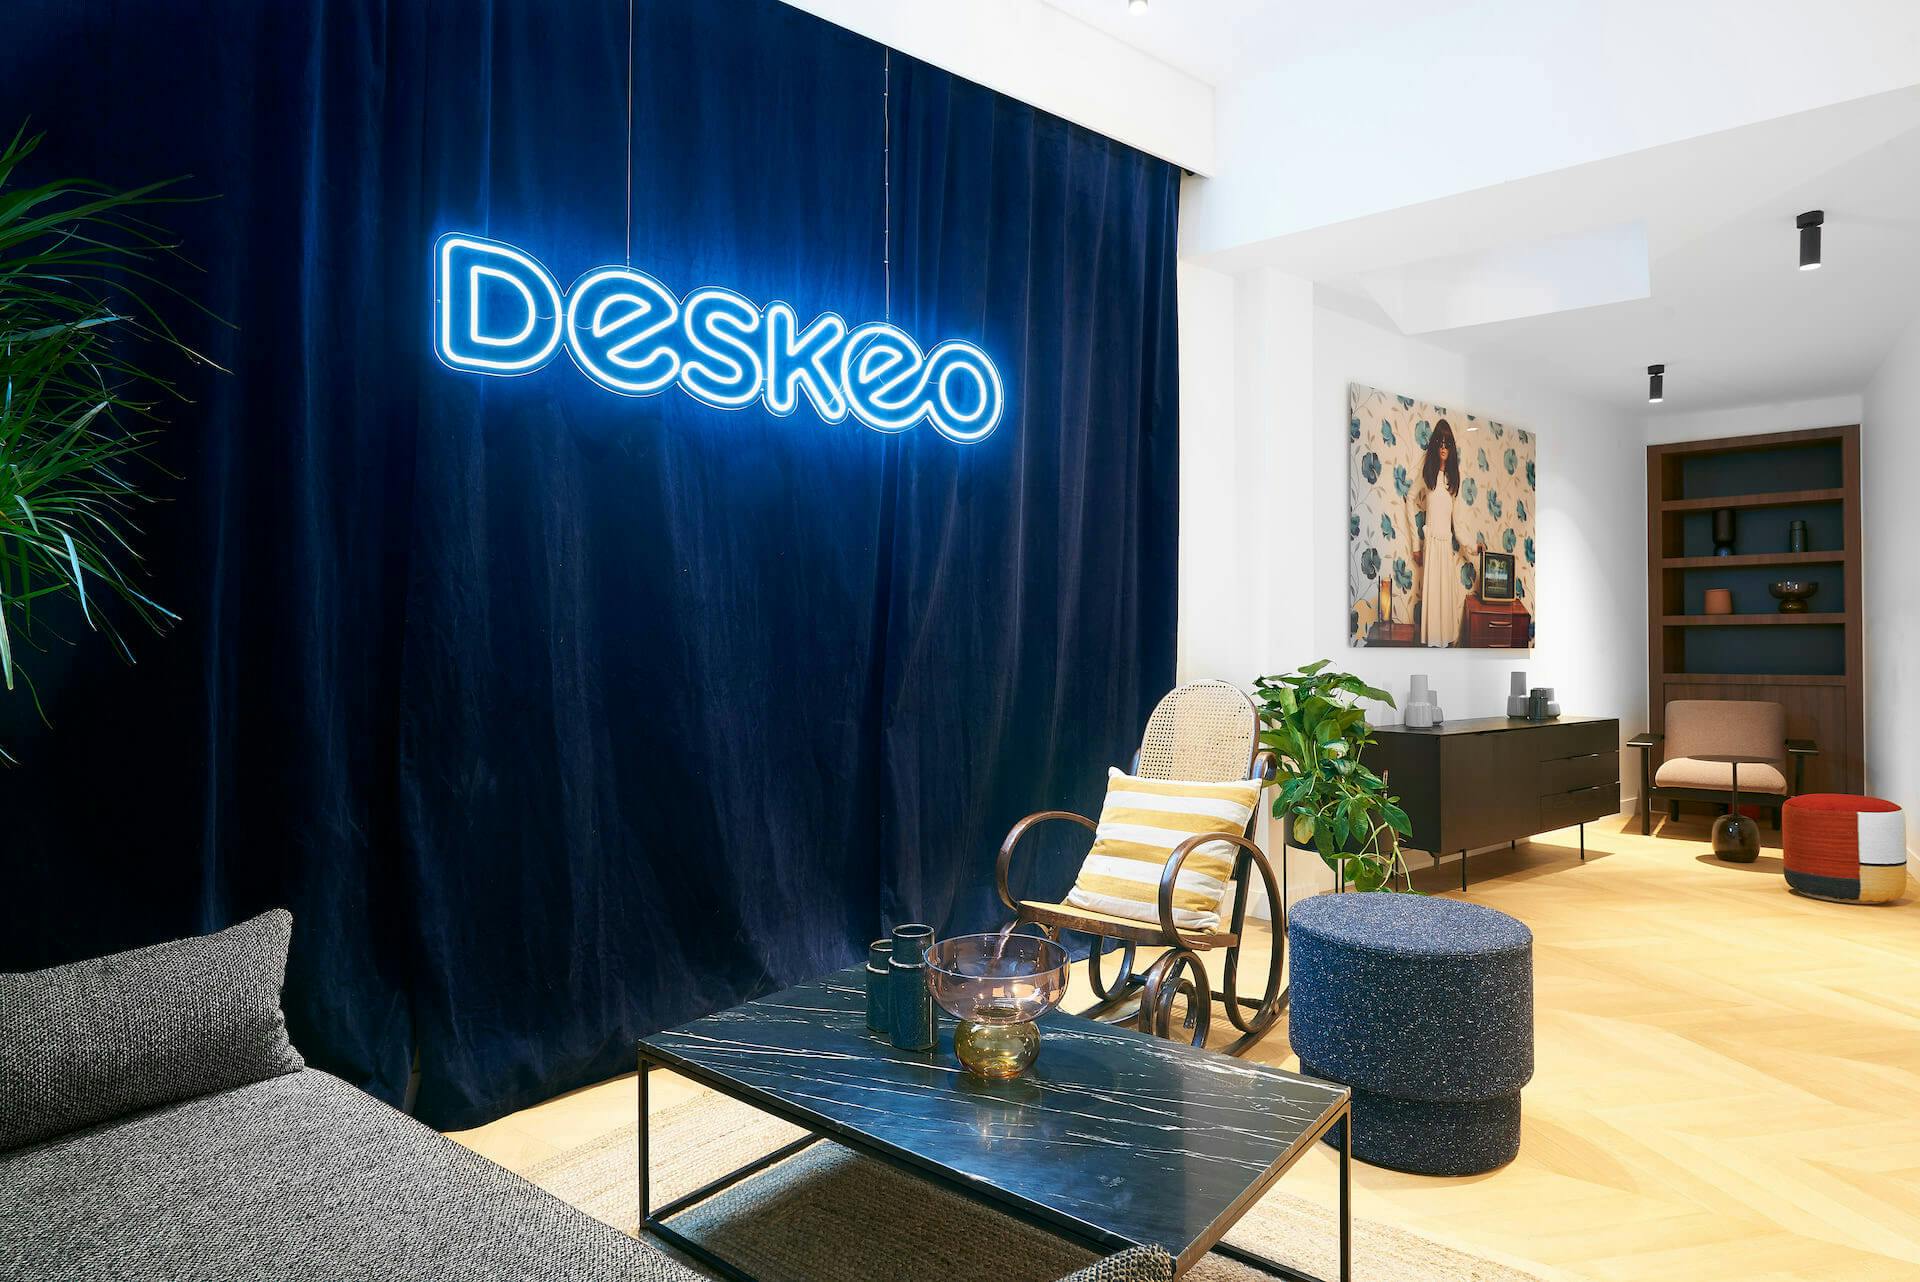 Deskeo, partenaire officiel du SIMI 2019